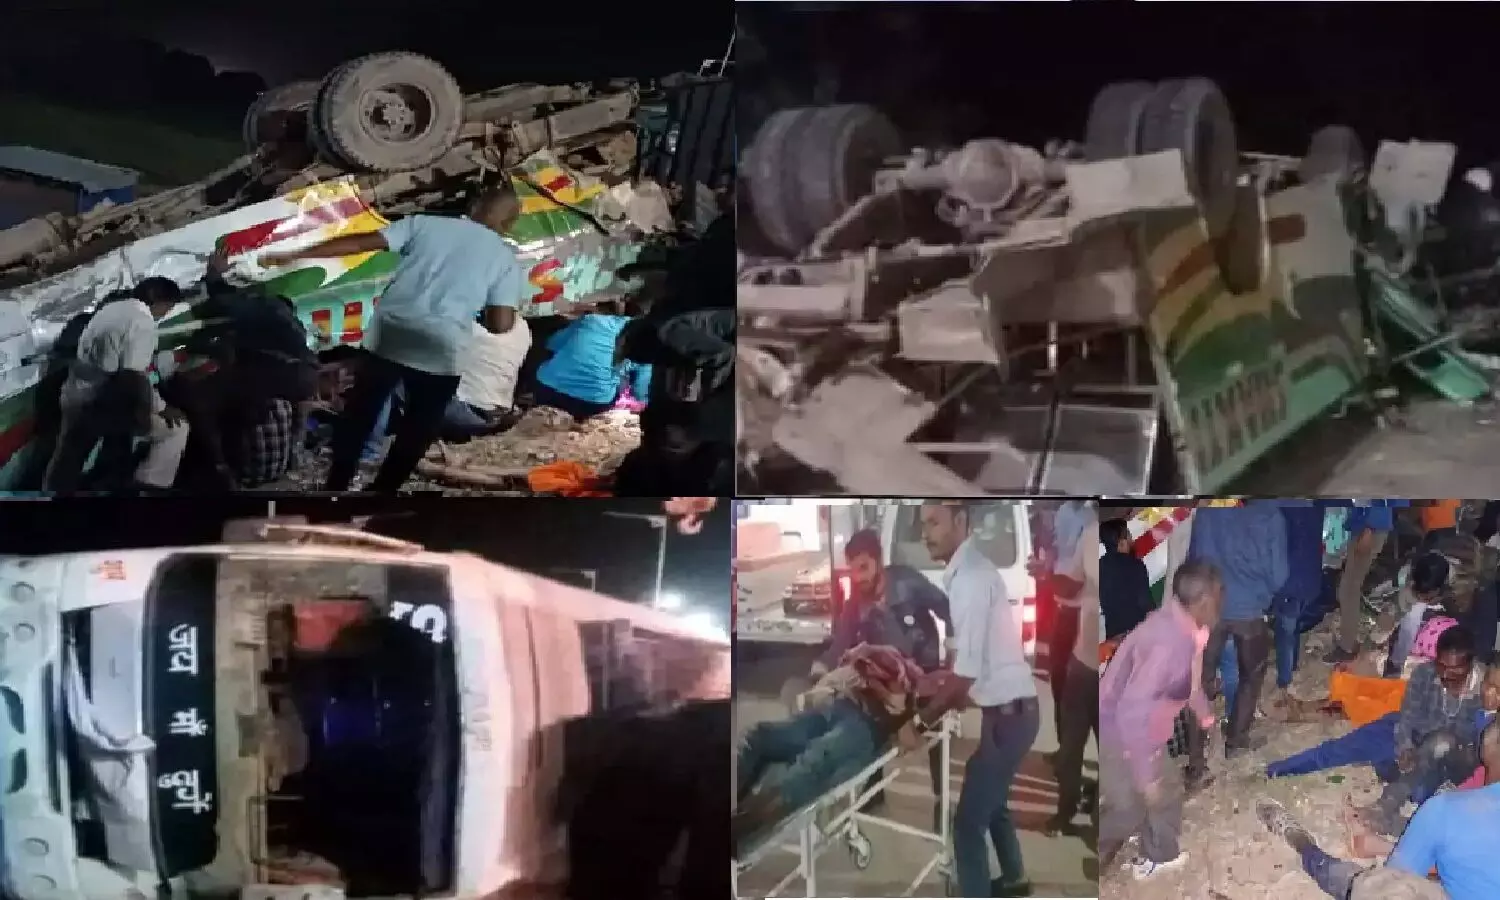 सीधी बस हादसा: अमित शाह के कार्यक्रम से लौट रहीं 3 बसों को ट्रक ने ठोकर मारी, 2 खाई में गिरीं; 14 की मौत, 60 से अधिक घायल, दर्जनों गंभीर